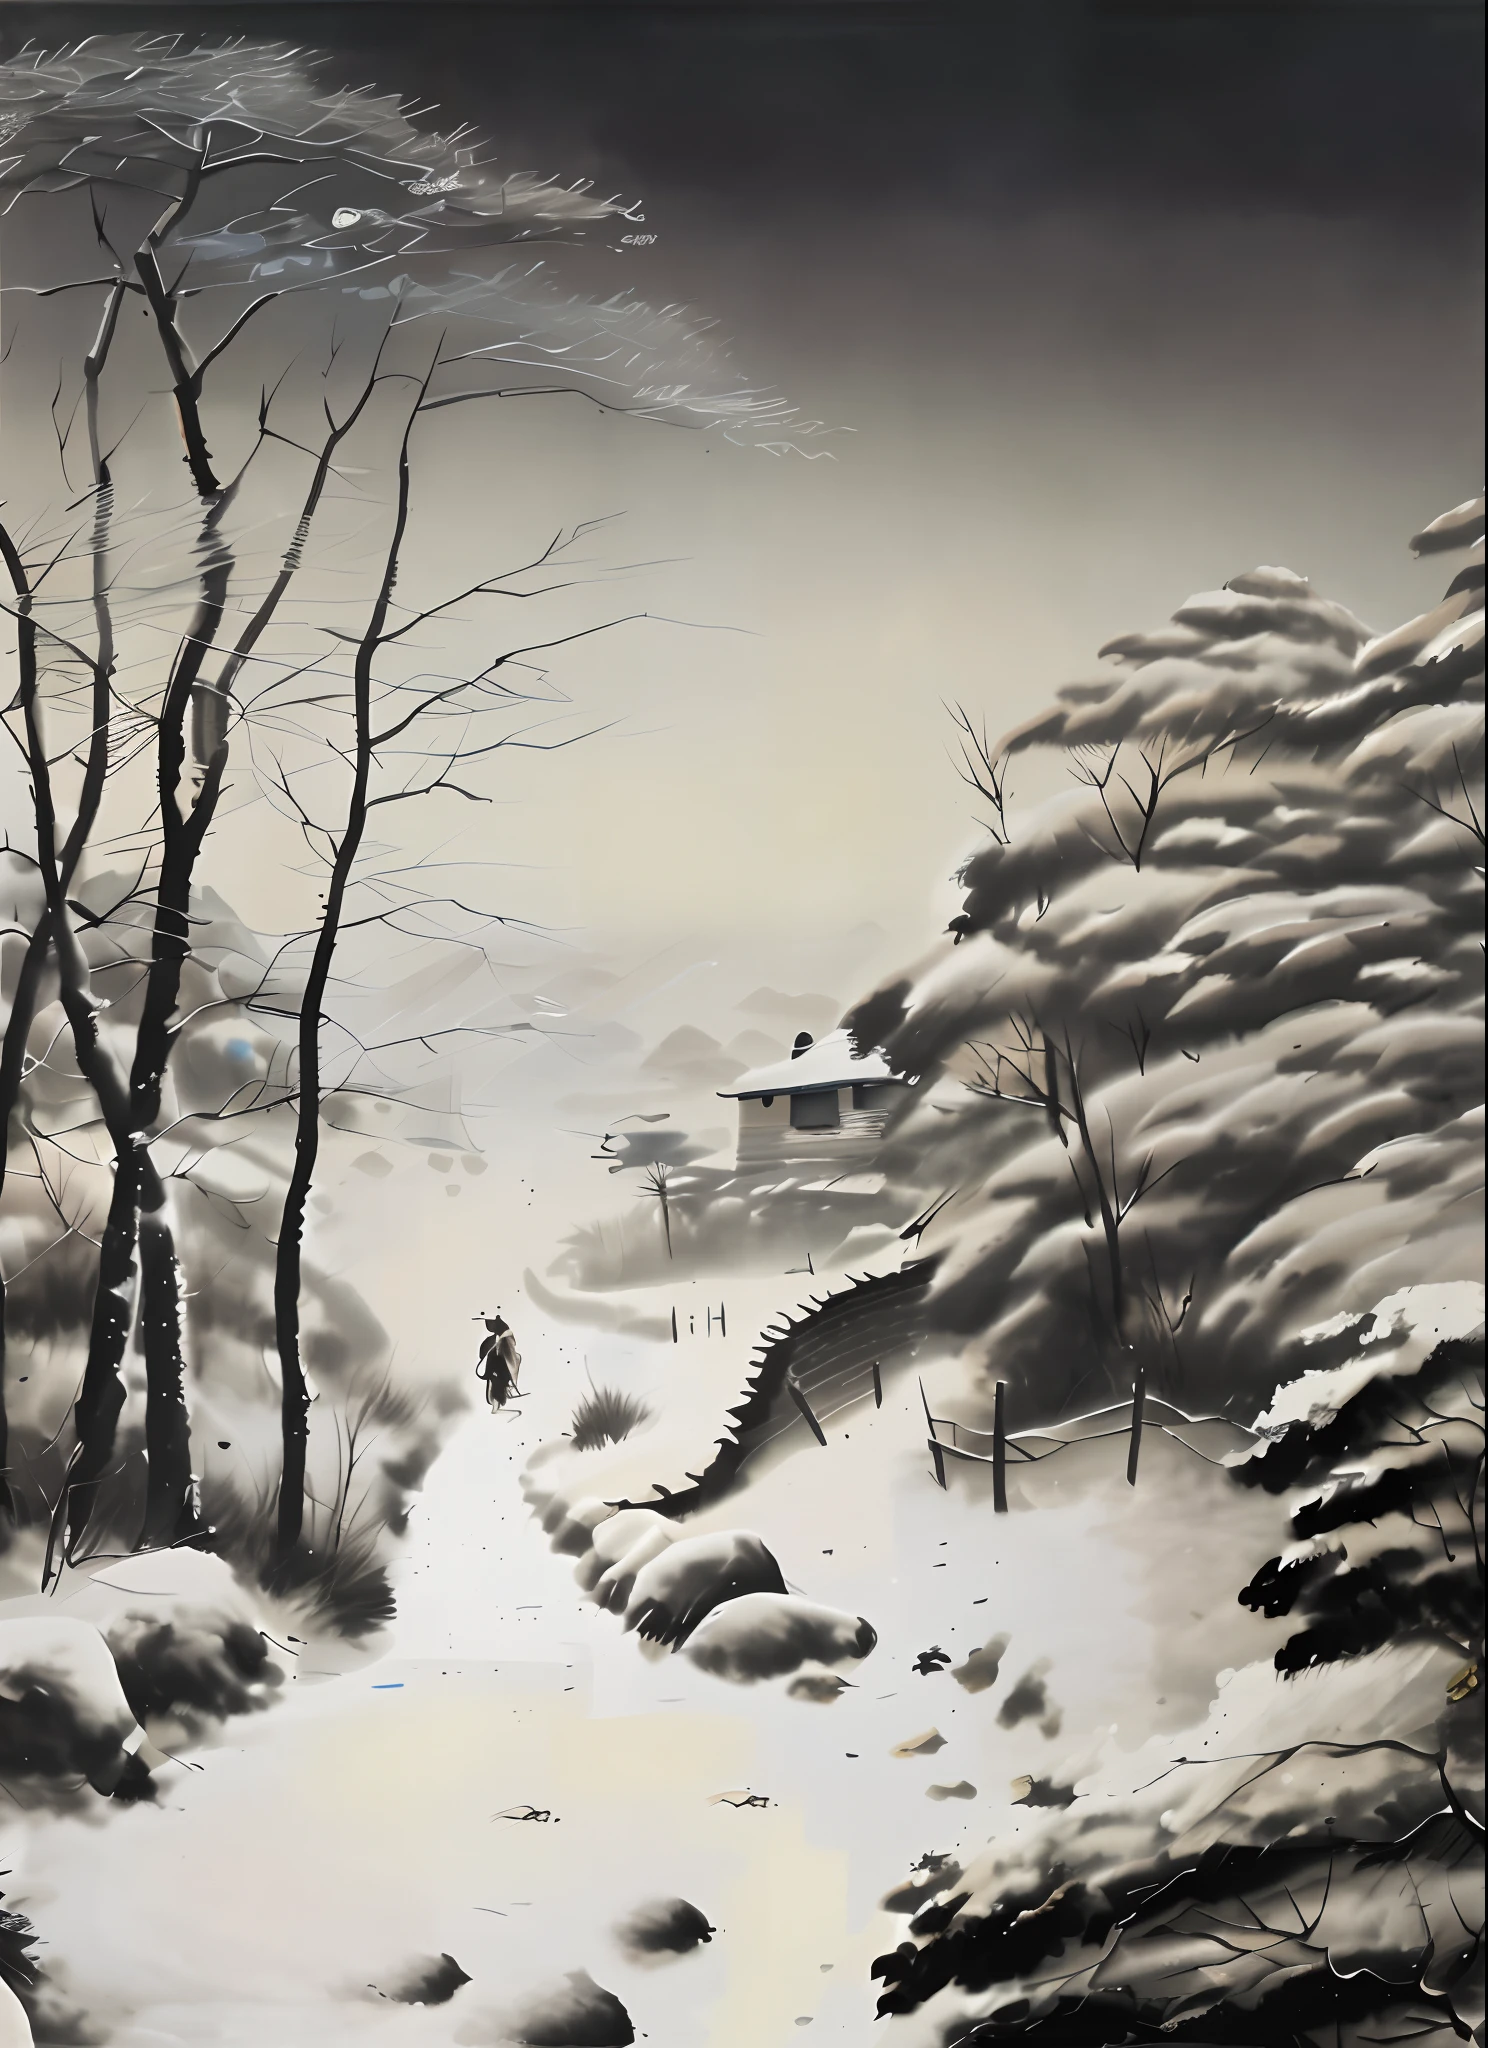 Dibuja un hombre caminando en la nieve., inspirado en Huang Binhong, artista coreano, inspirado en Kim Hong-do, Autor：Yi Ren Wen, inspirado en Yeong-Hao Han, inspirado por Wang Yuanqi, paisaje nevado, Autor：Shen Shizhen, inspirado en Lu Zhi, inspirado en Yoshihiko Wada